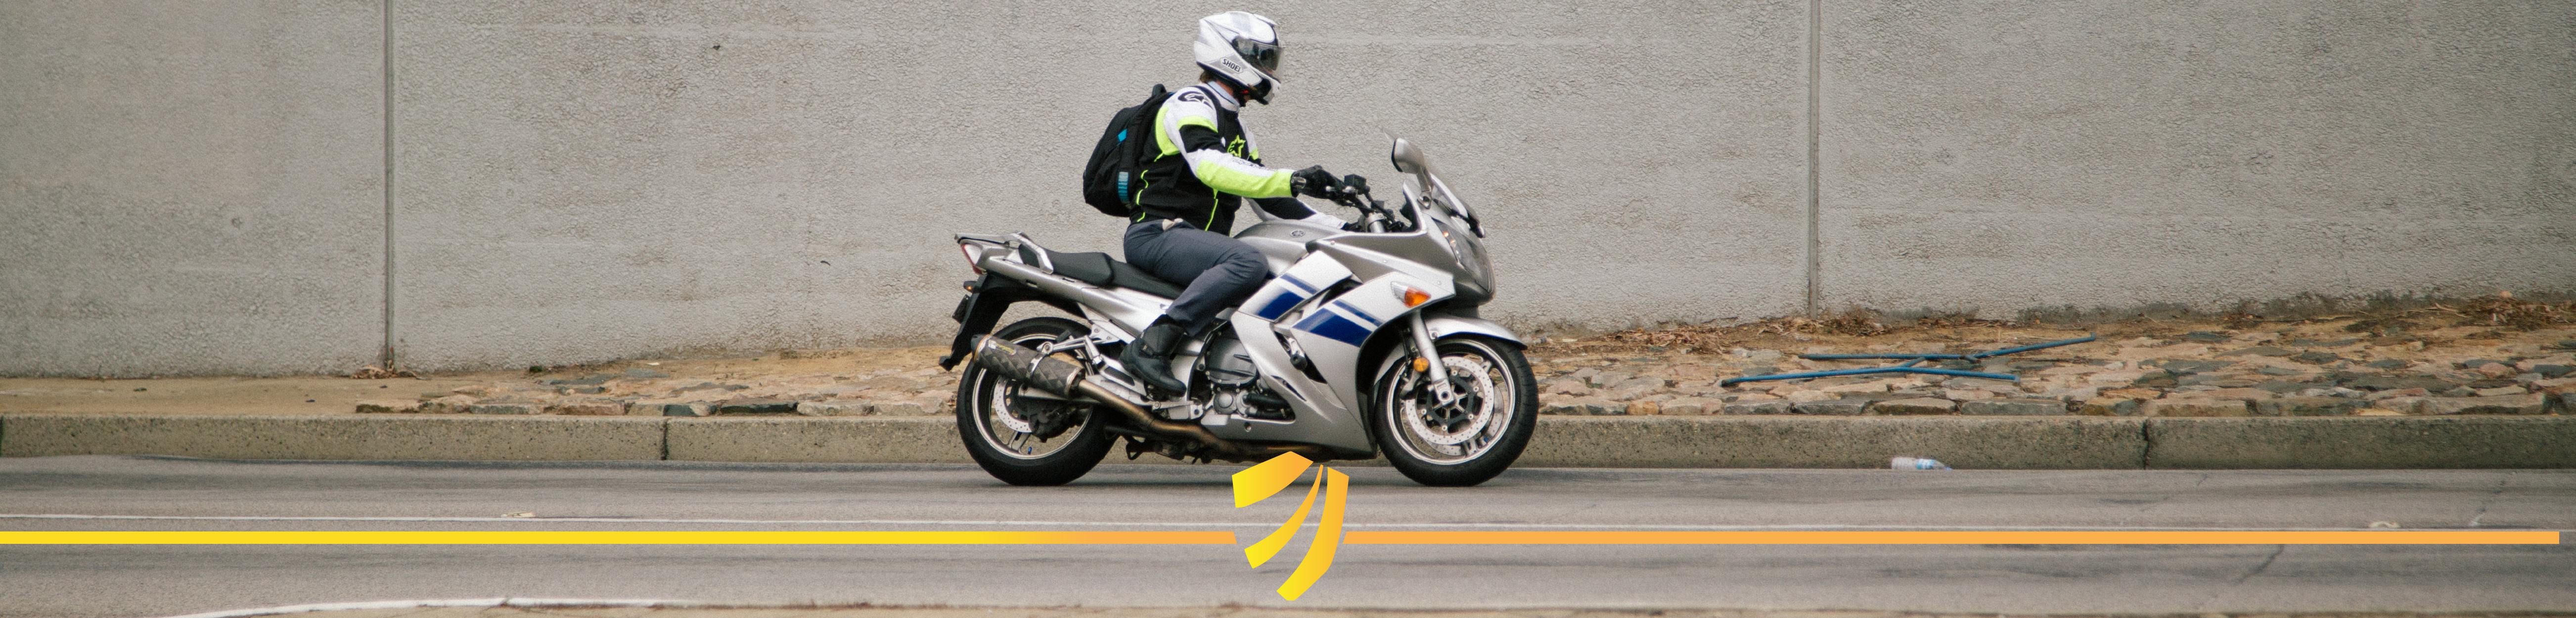 Motorbike rider in safety gear